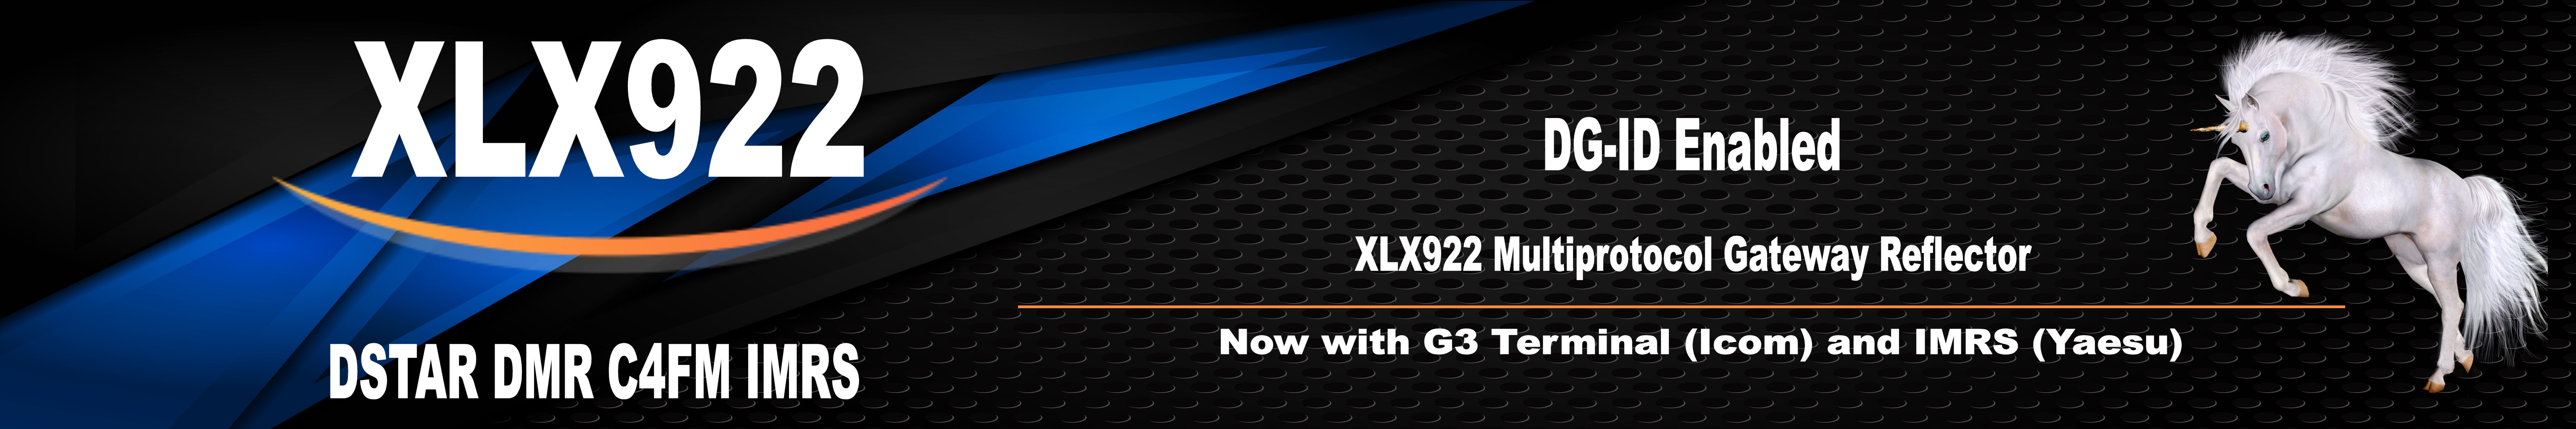 XLX922 Multiprotocol Gateway Reflector